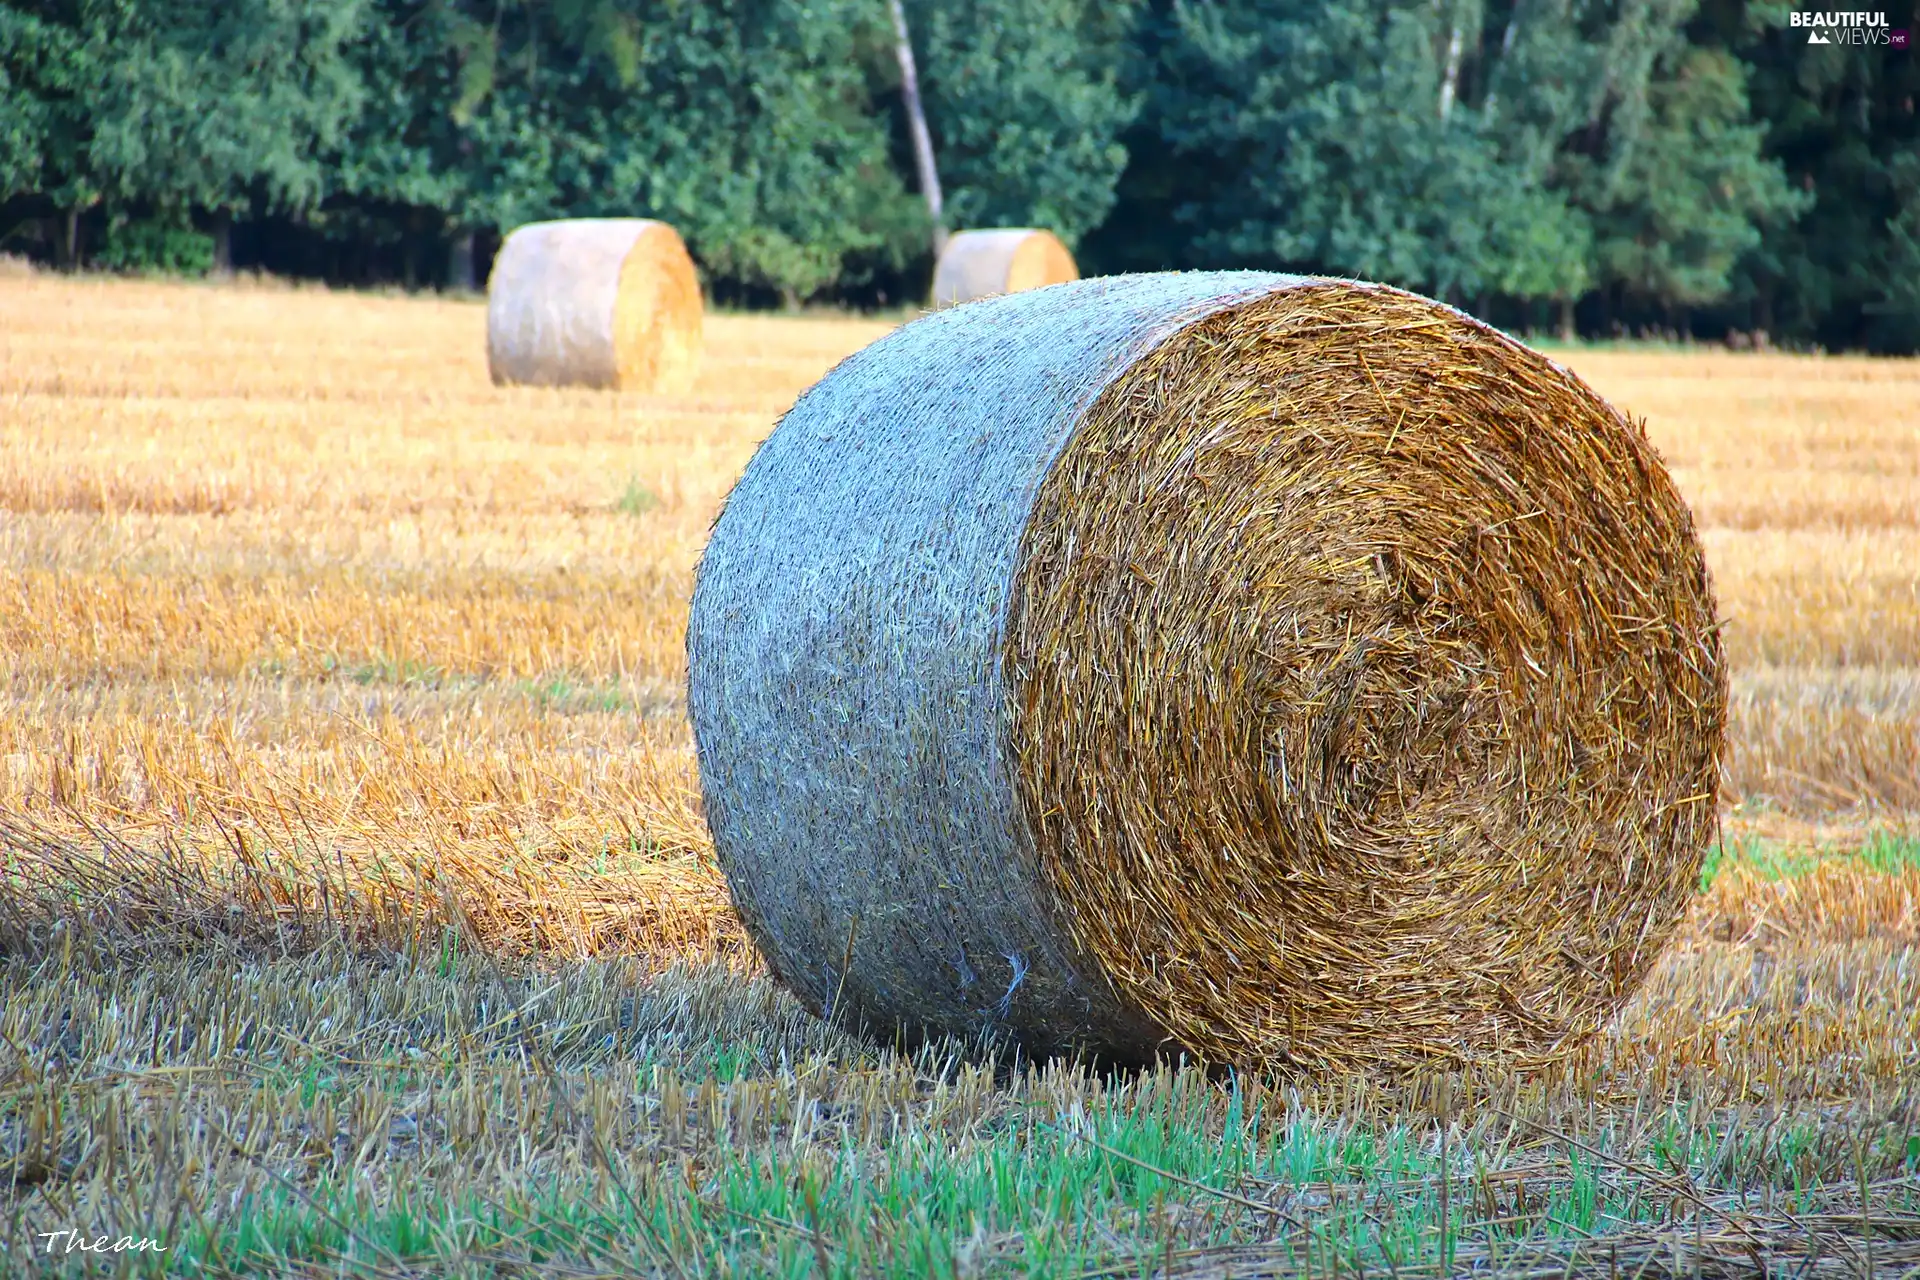 Bele, an, field, hay